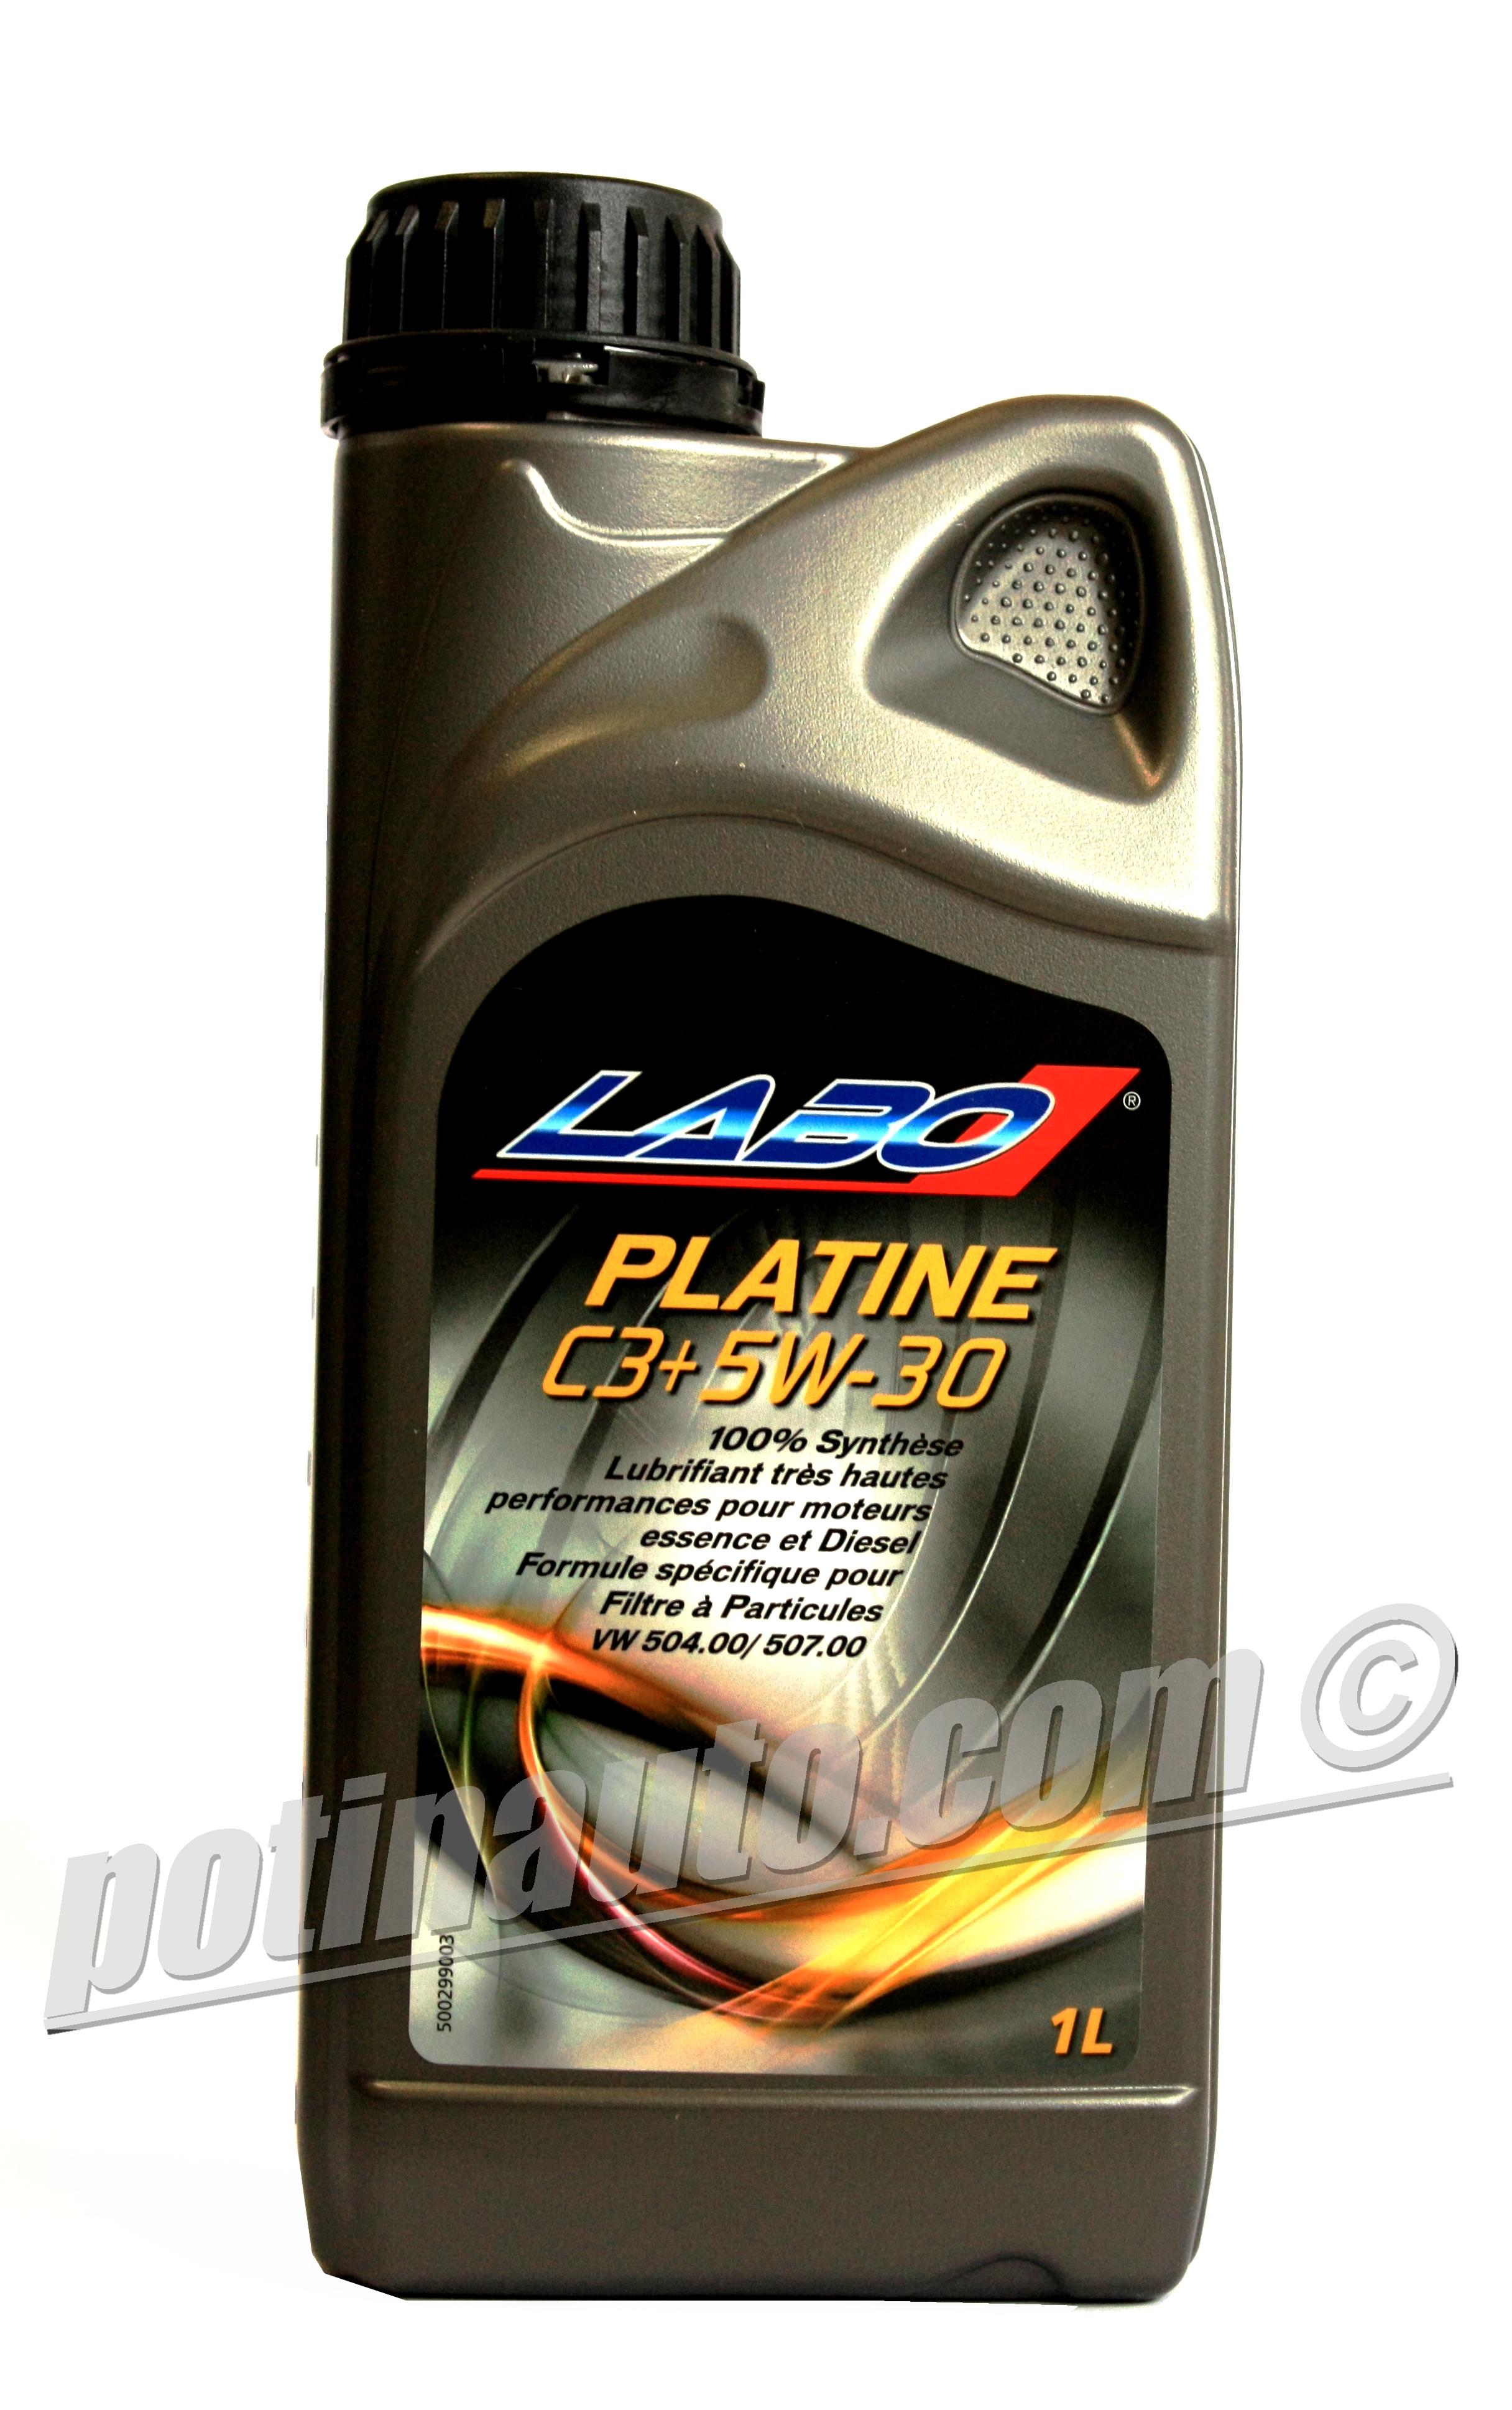 Huile Platine LABO 100% Synthèse trés hautes performances C-3+ 5W30 Filtre à Particules VW504.00/507.00 1 Litre